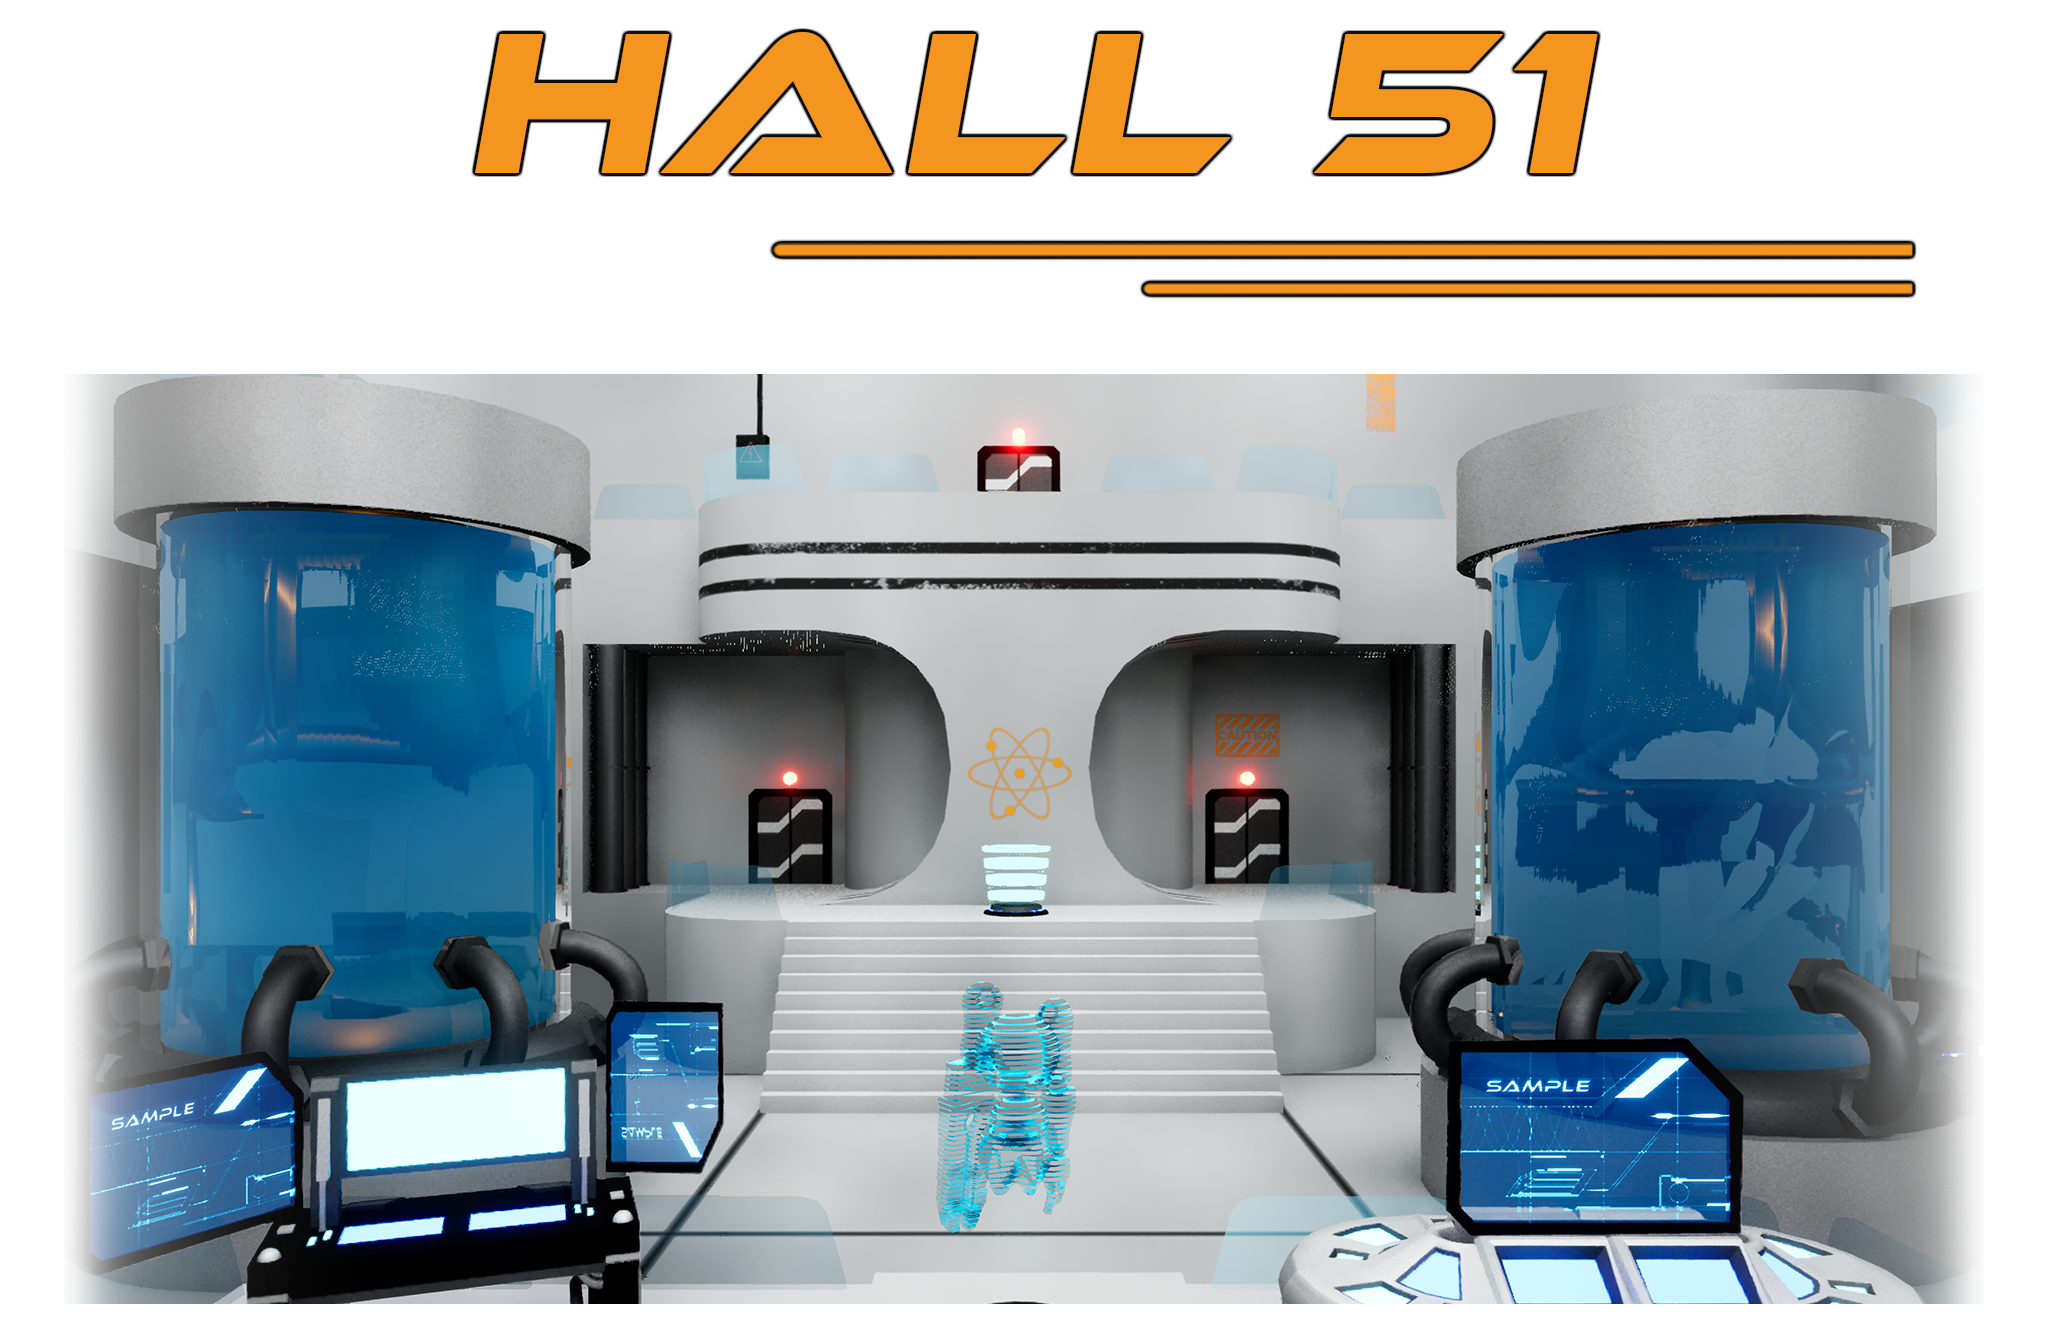 Hall 51